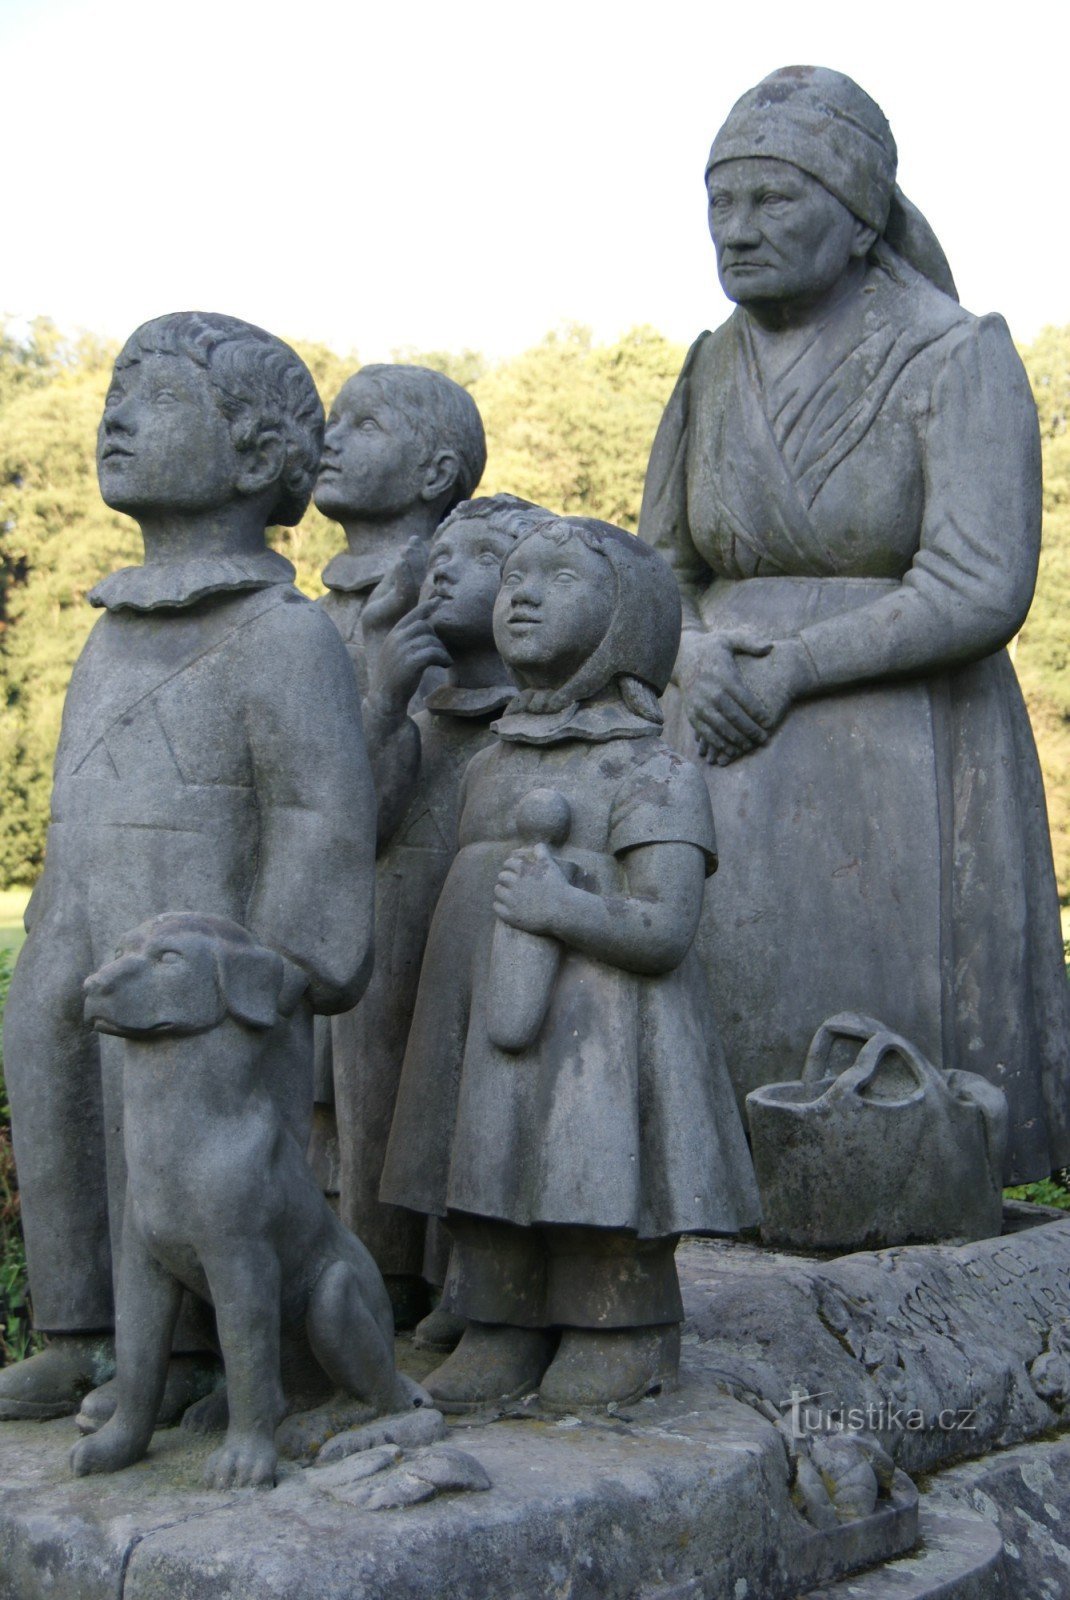 Grandmother's Valley - sculpture Grandmother with grandchildren